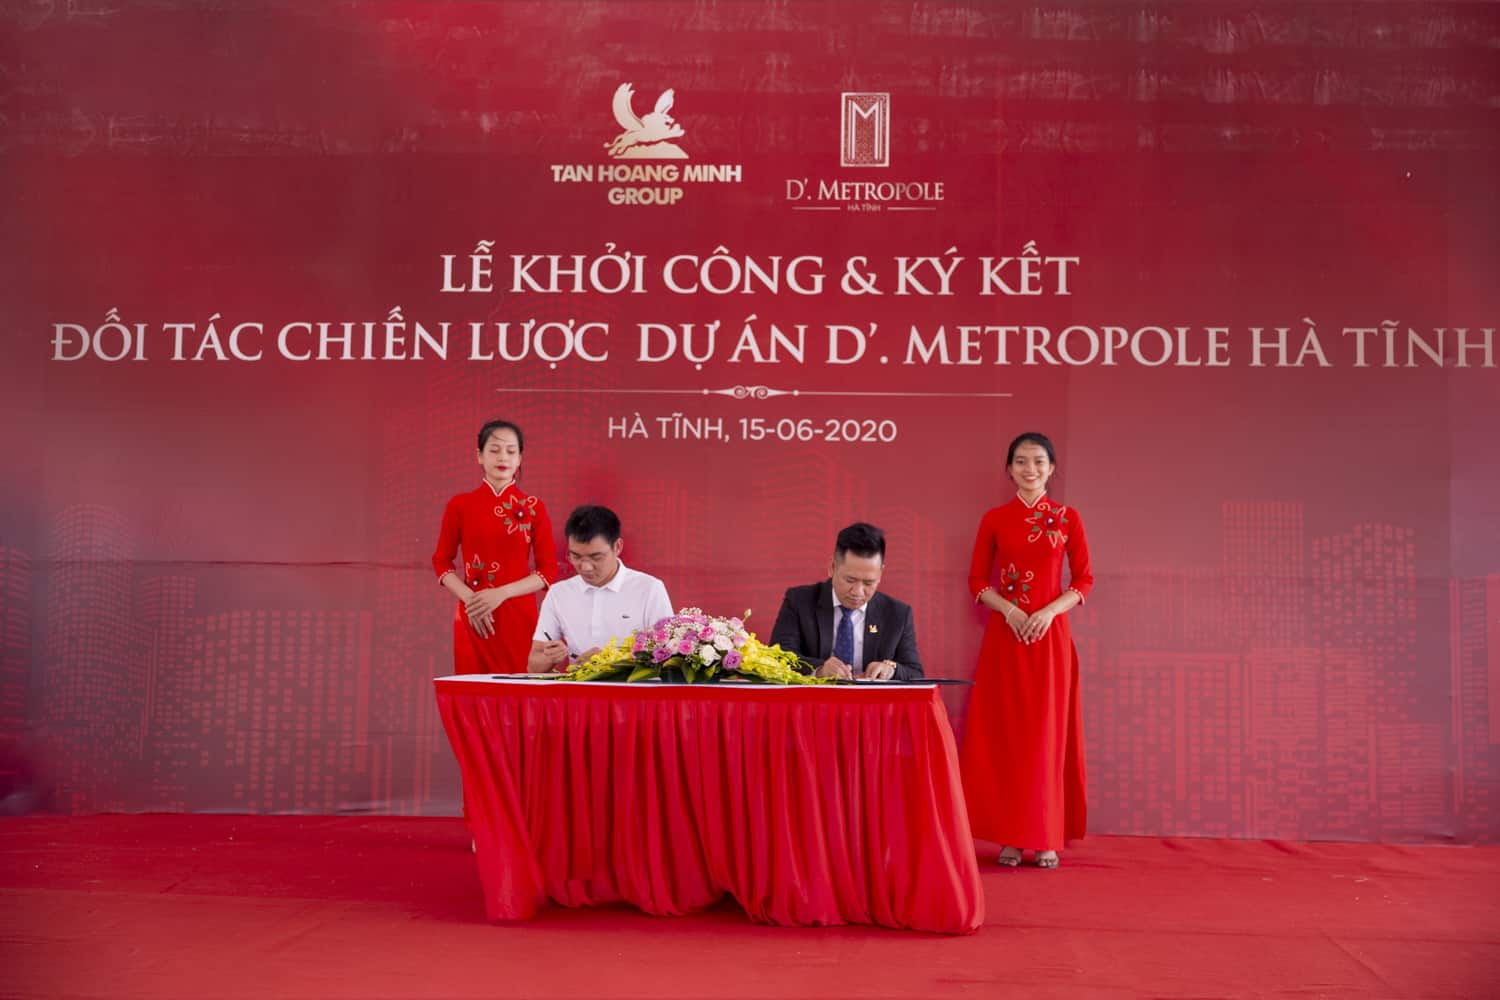 Chủ đầu tư dự án D’ Metropple Hà Tĩnh là Tân Hoàng Minh Group